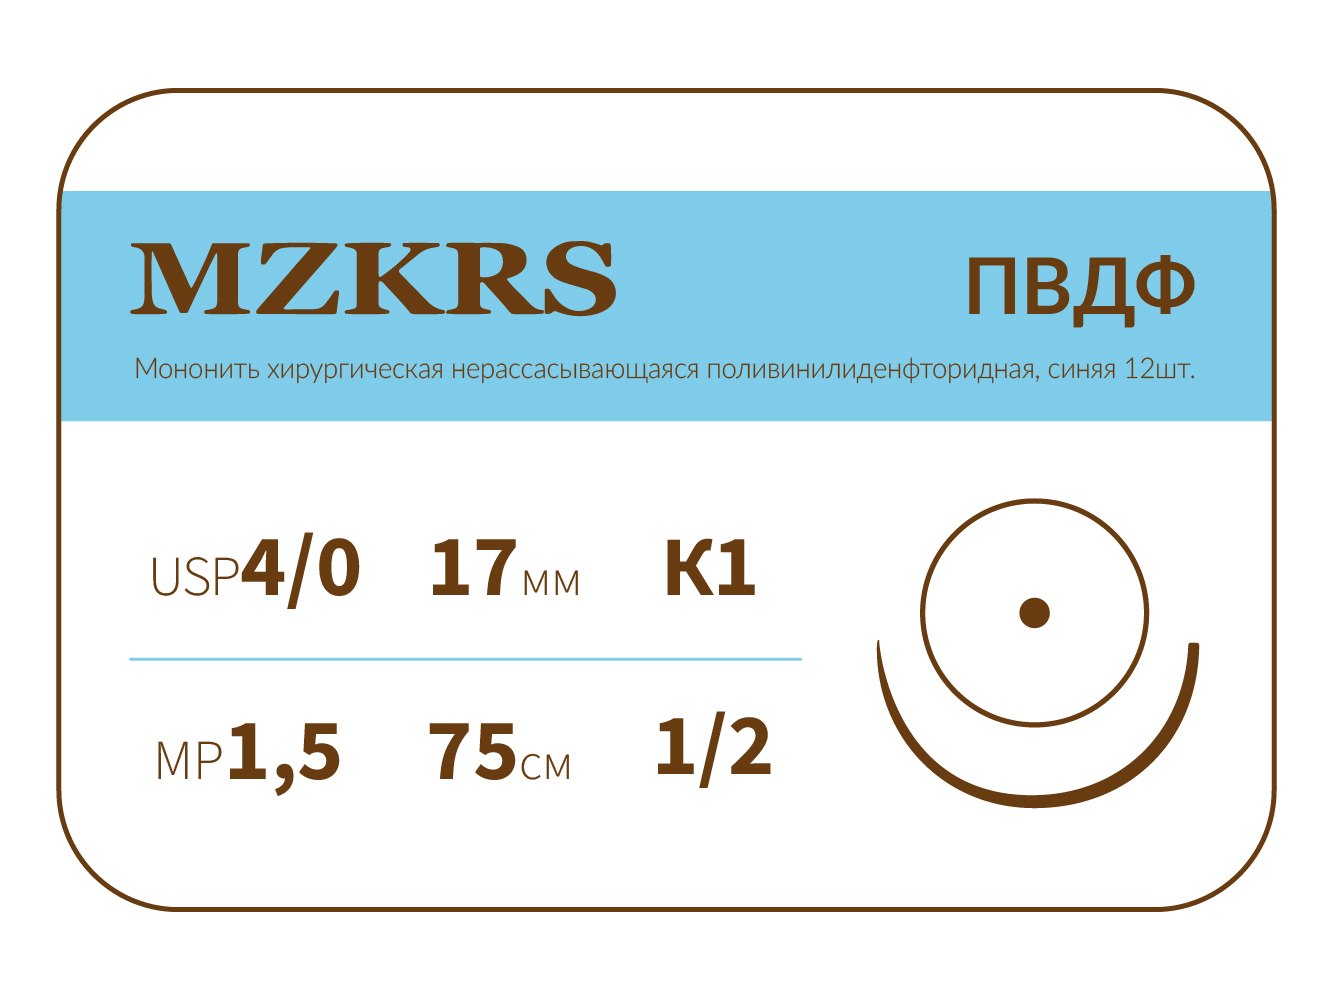 1712К1-Premium-4/0 (1.5)75 ПВДФ хирургическая нить поливинилиденфторидная, MZKRS (Россия)